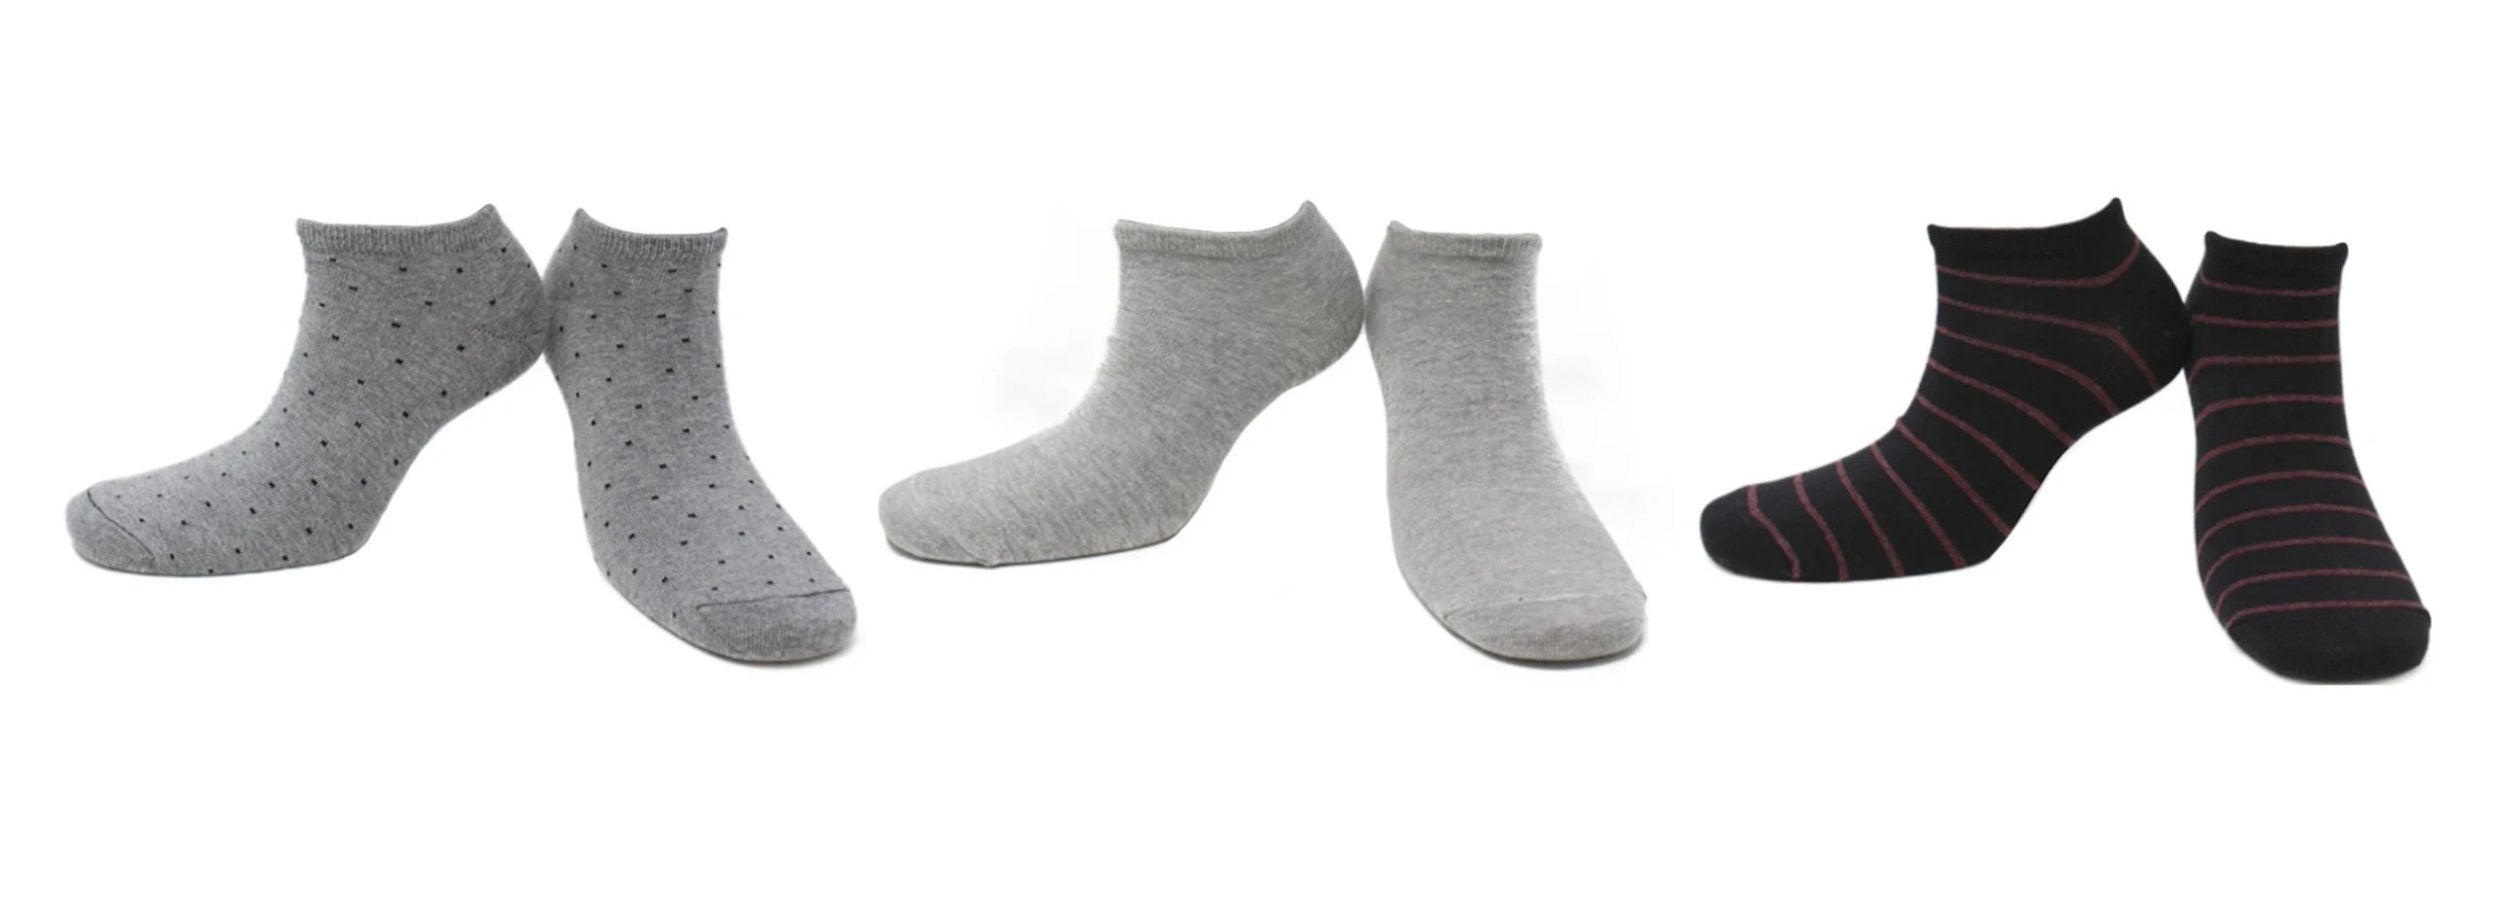 Socquettes Homme Élégance en Coton Peigné (3 paires) – Kolibri Socks